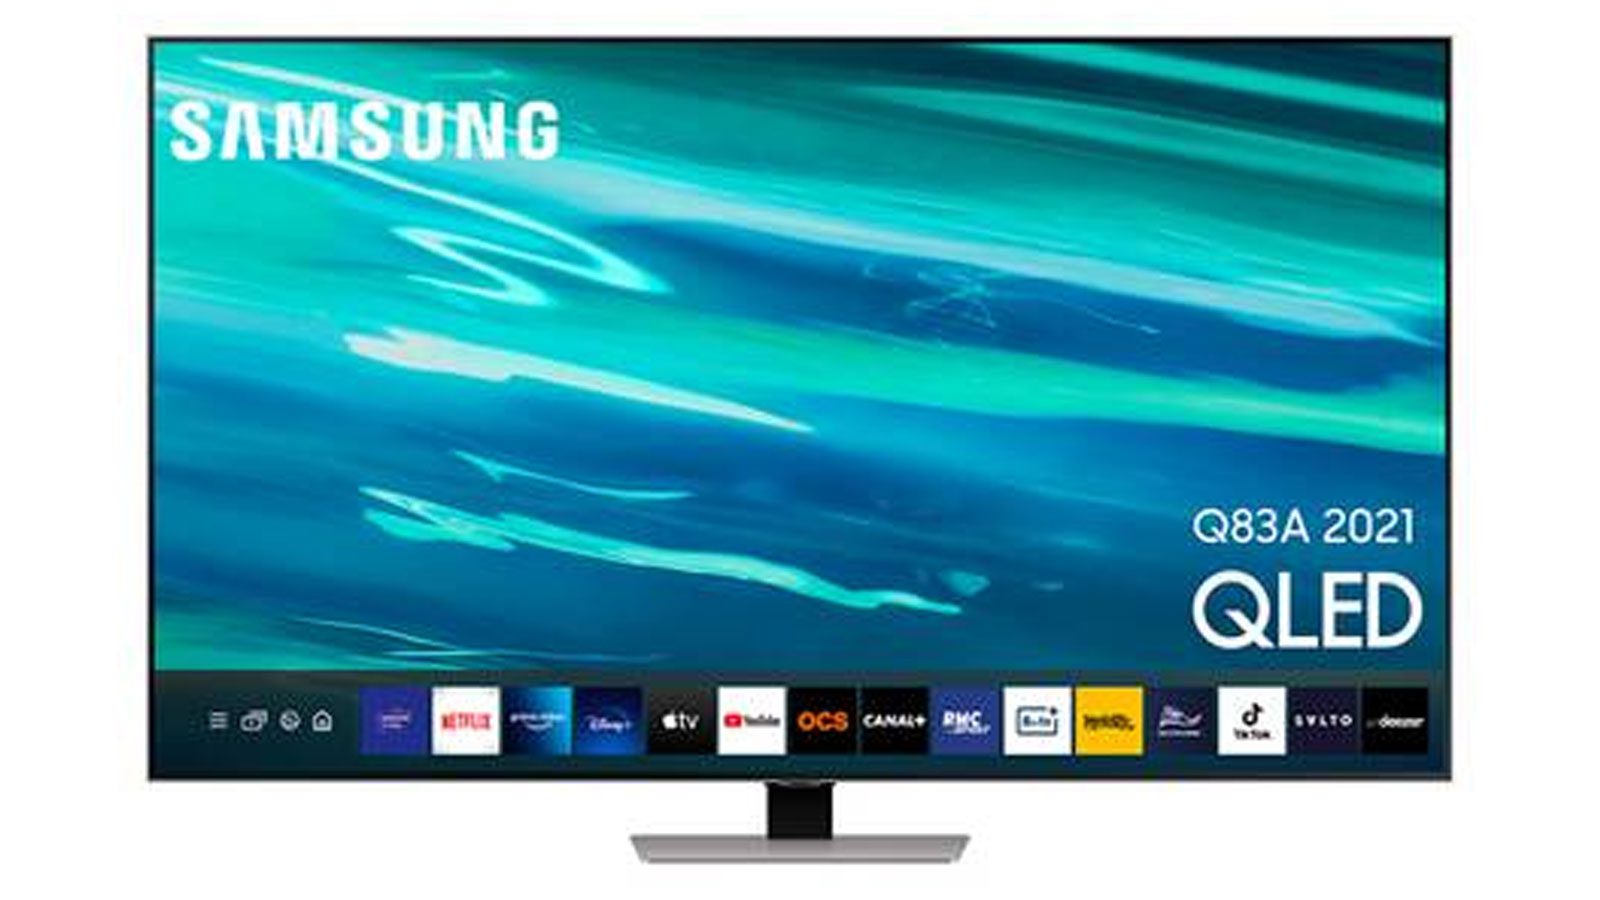 För under €1000 är denna Samsung QLED-TV ett erbjudande som du inte får missa